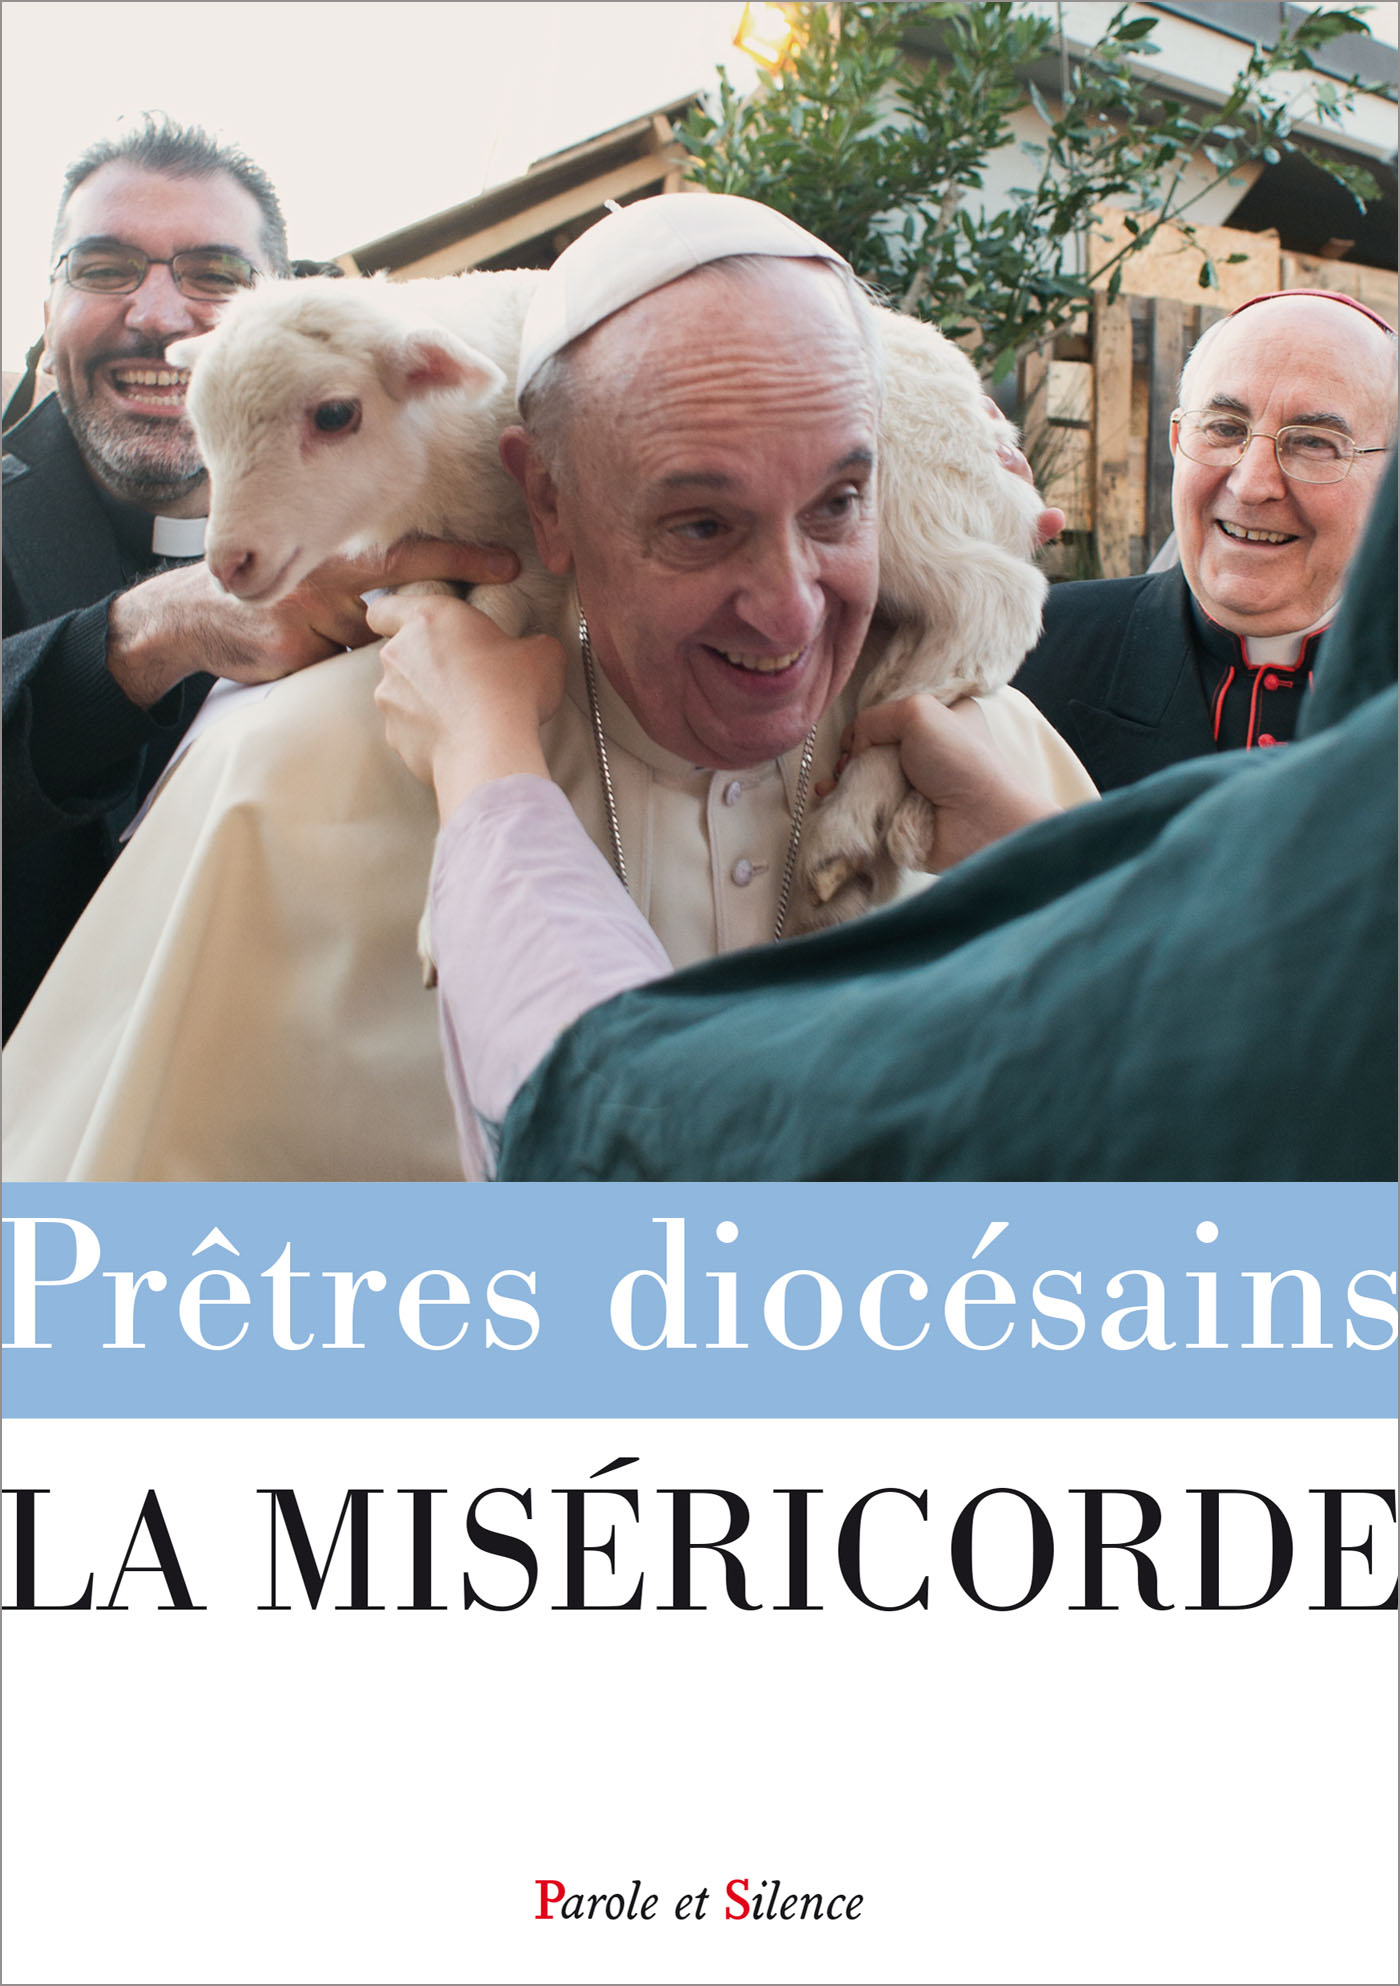 La miséricorde - HS Prêtres diocésains